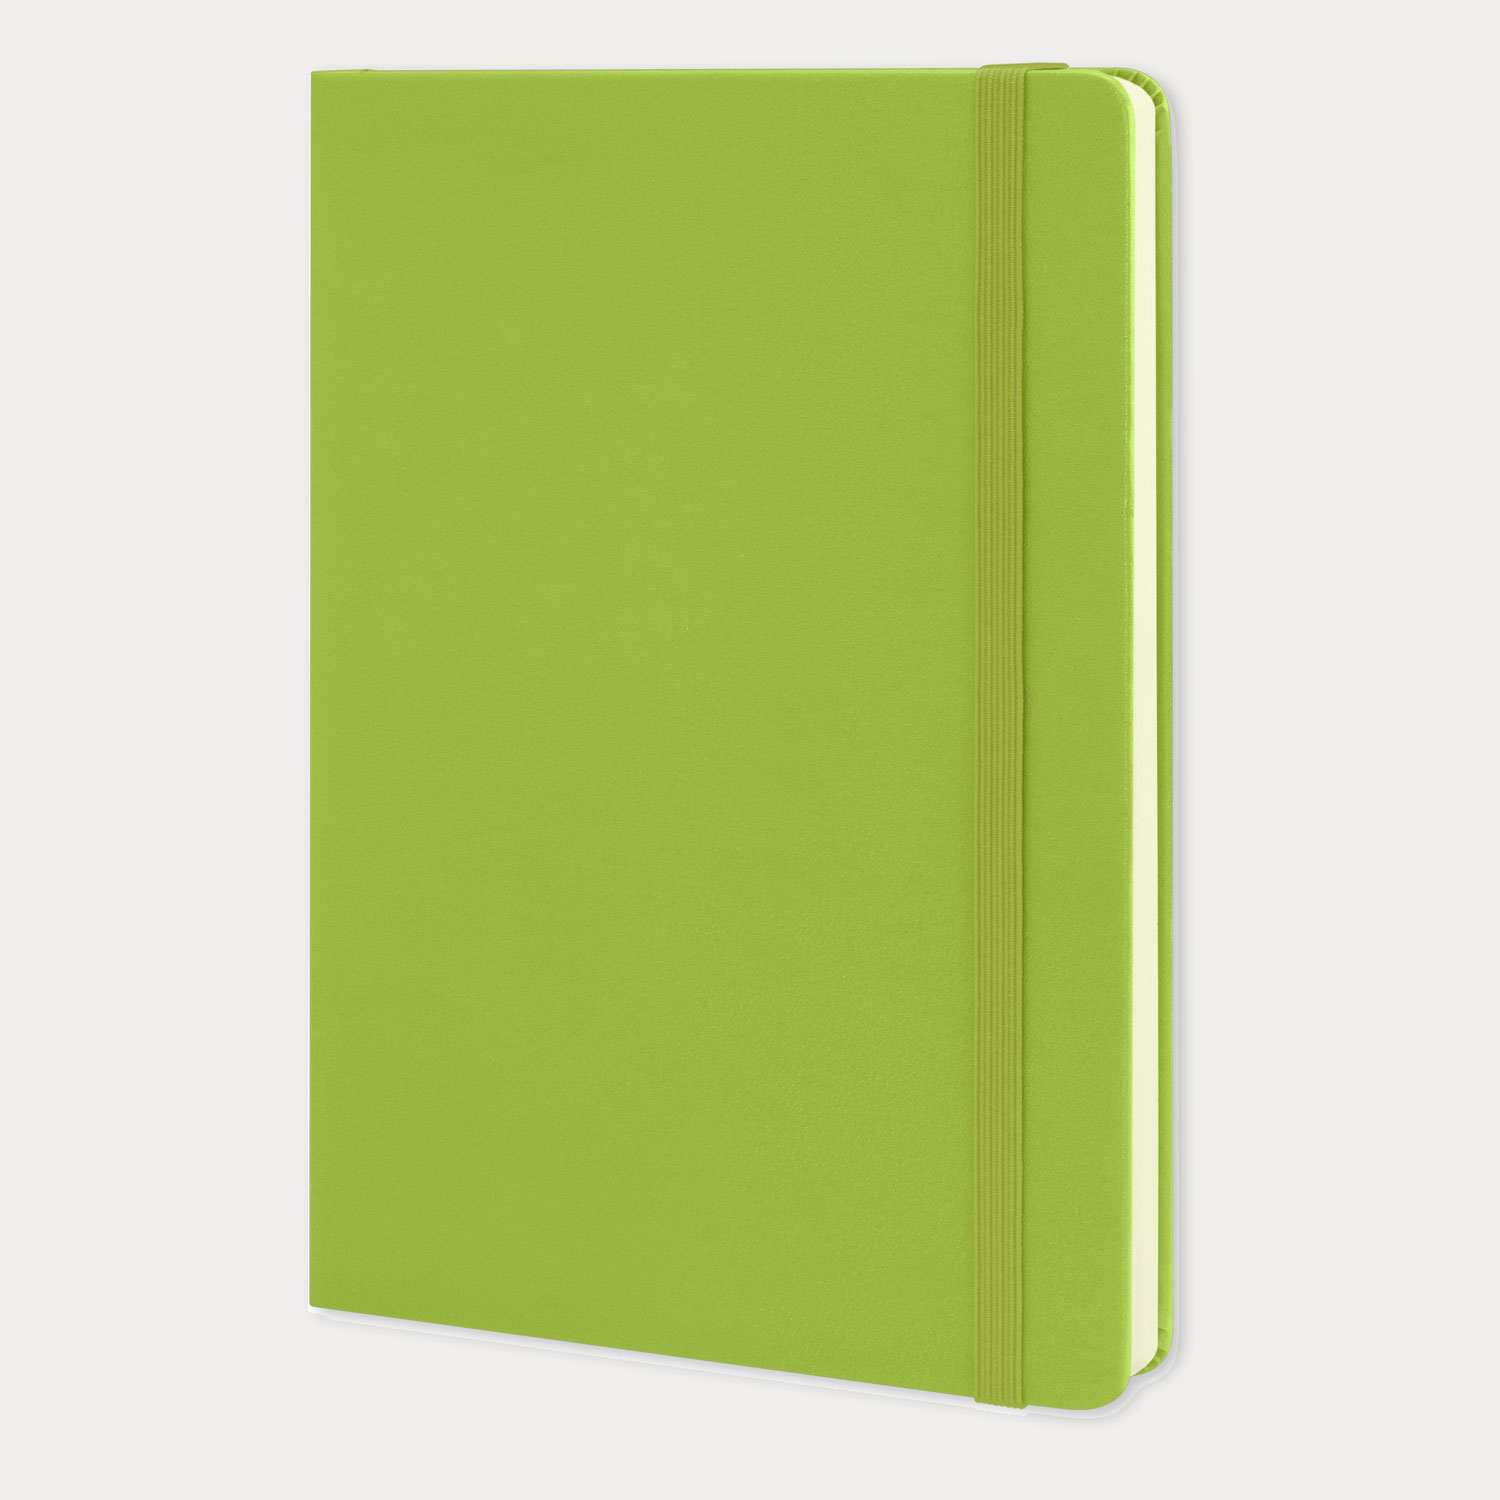 Moleskine New classic horizontal large hard surface notebook